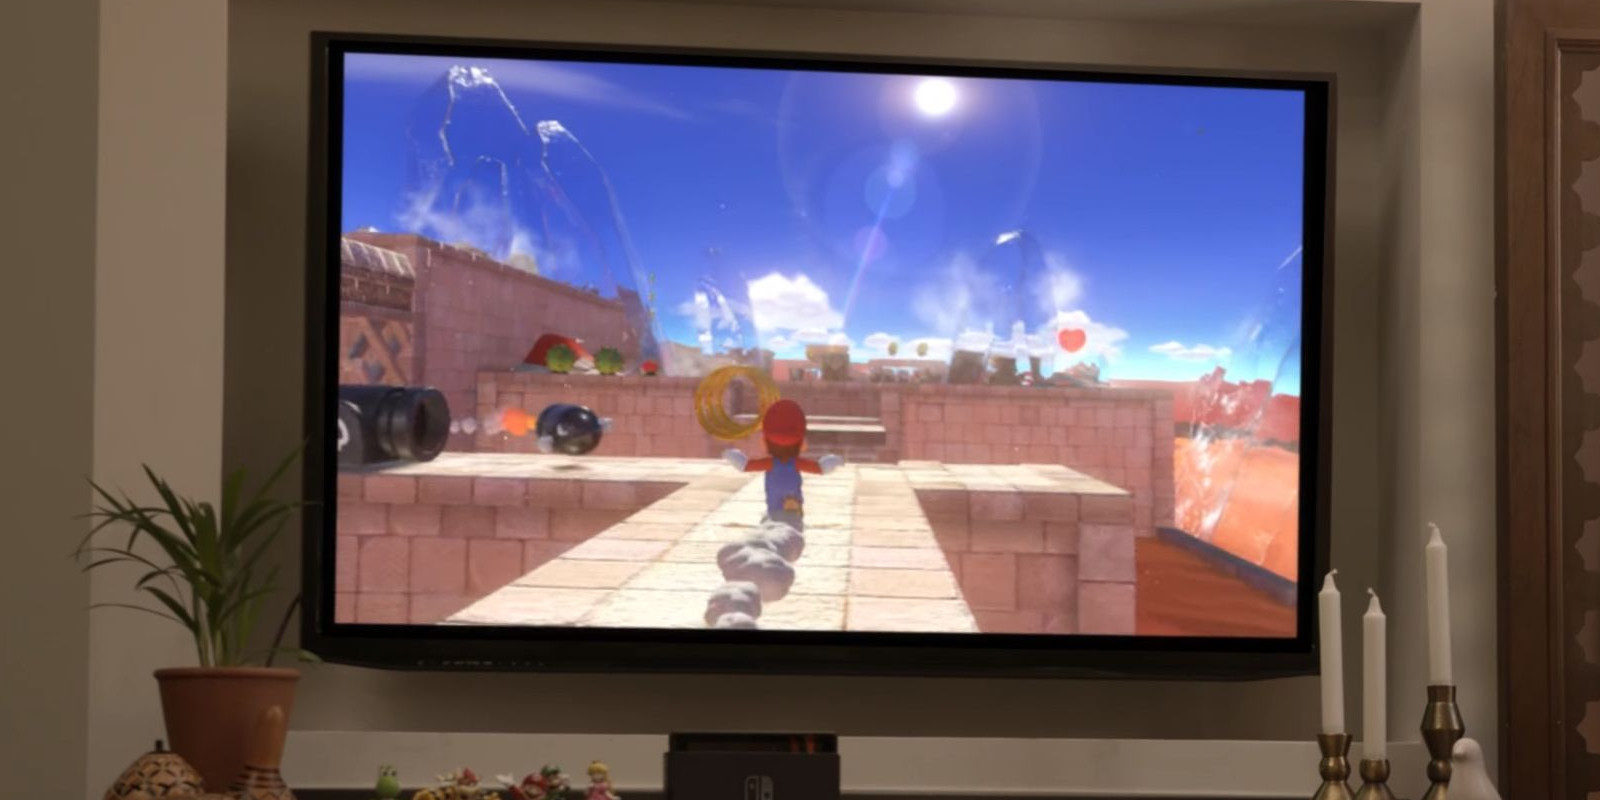 El 'Mario' de Switch es un posible juego de lanzamiento según Emily Rogers